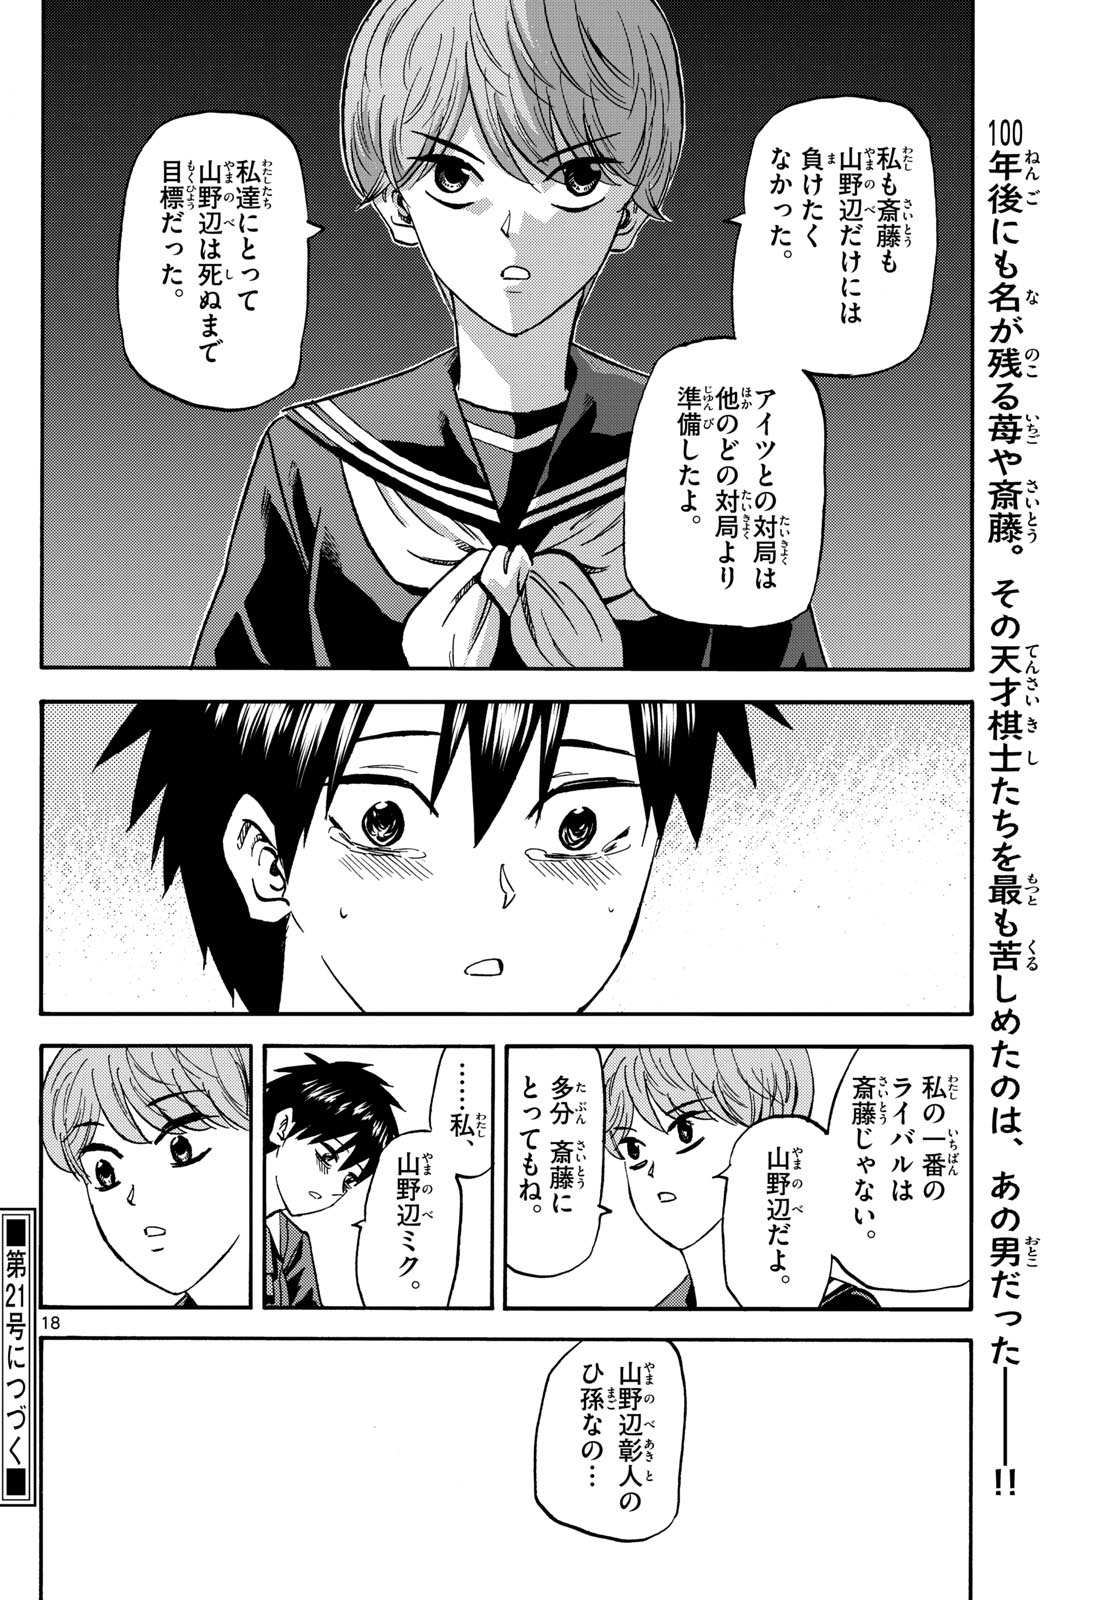 Tatsu to Ichigo - Chapter 187 - Page 18